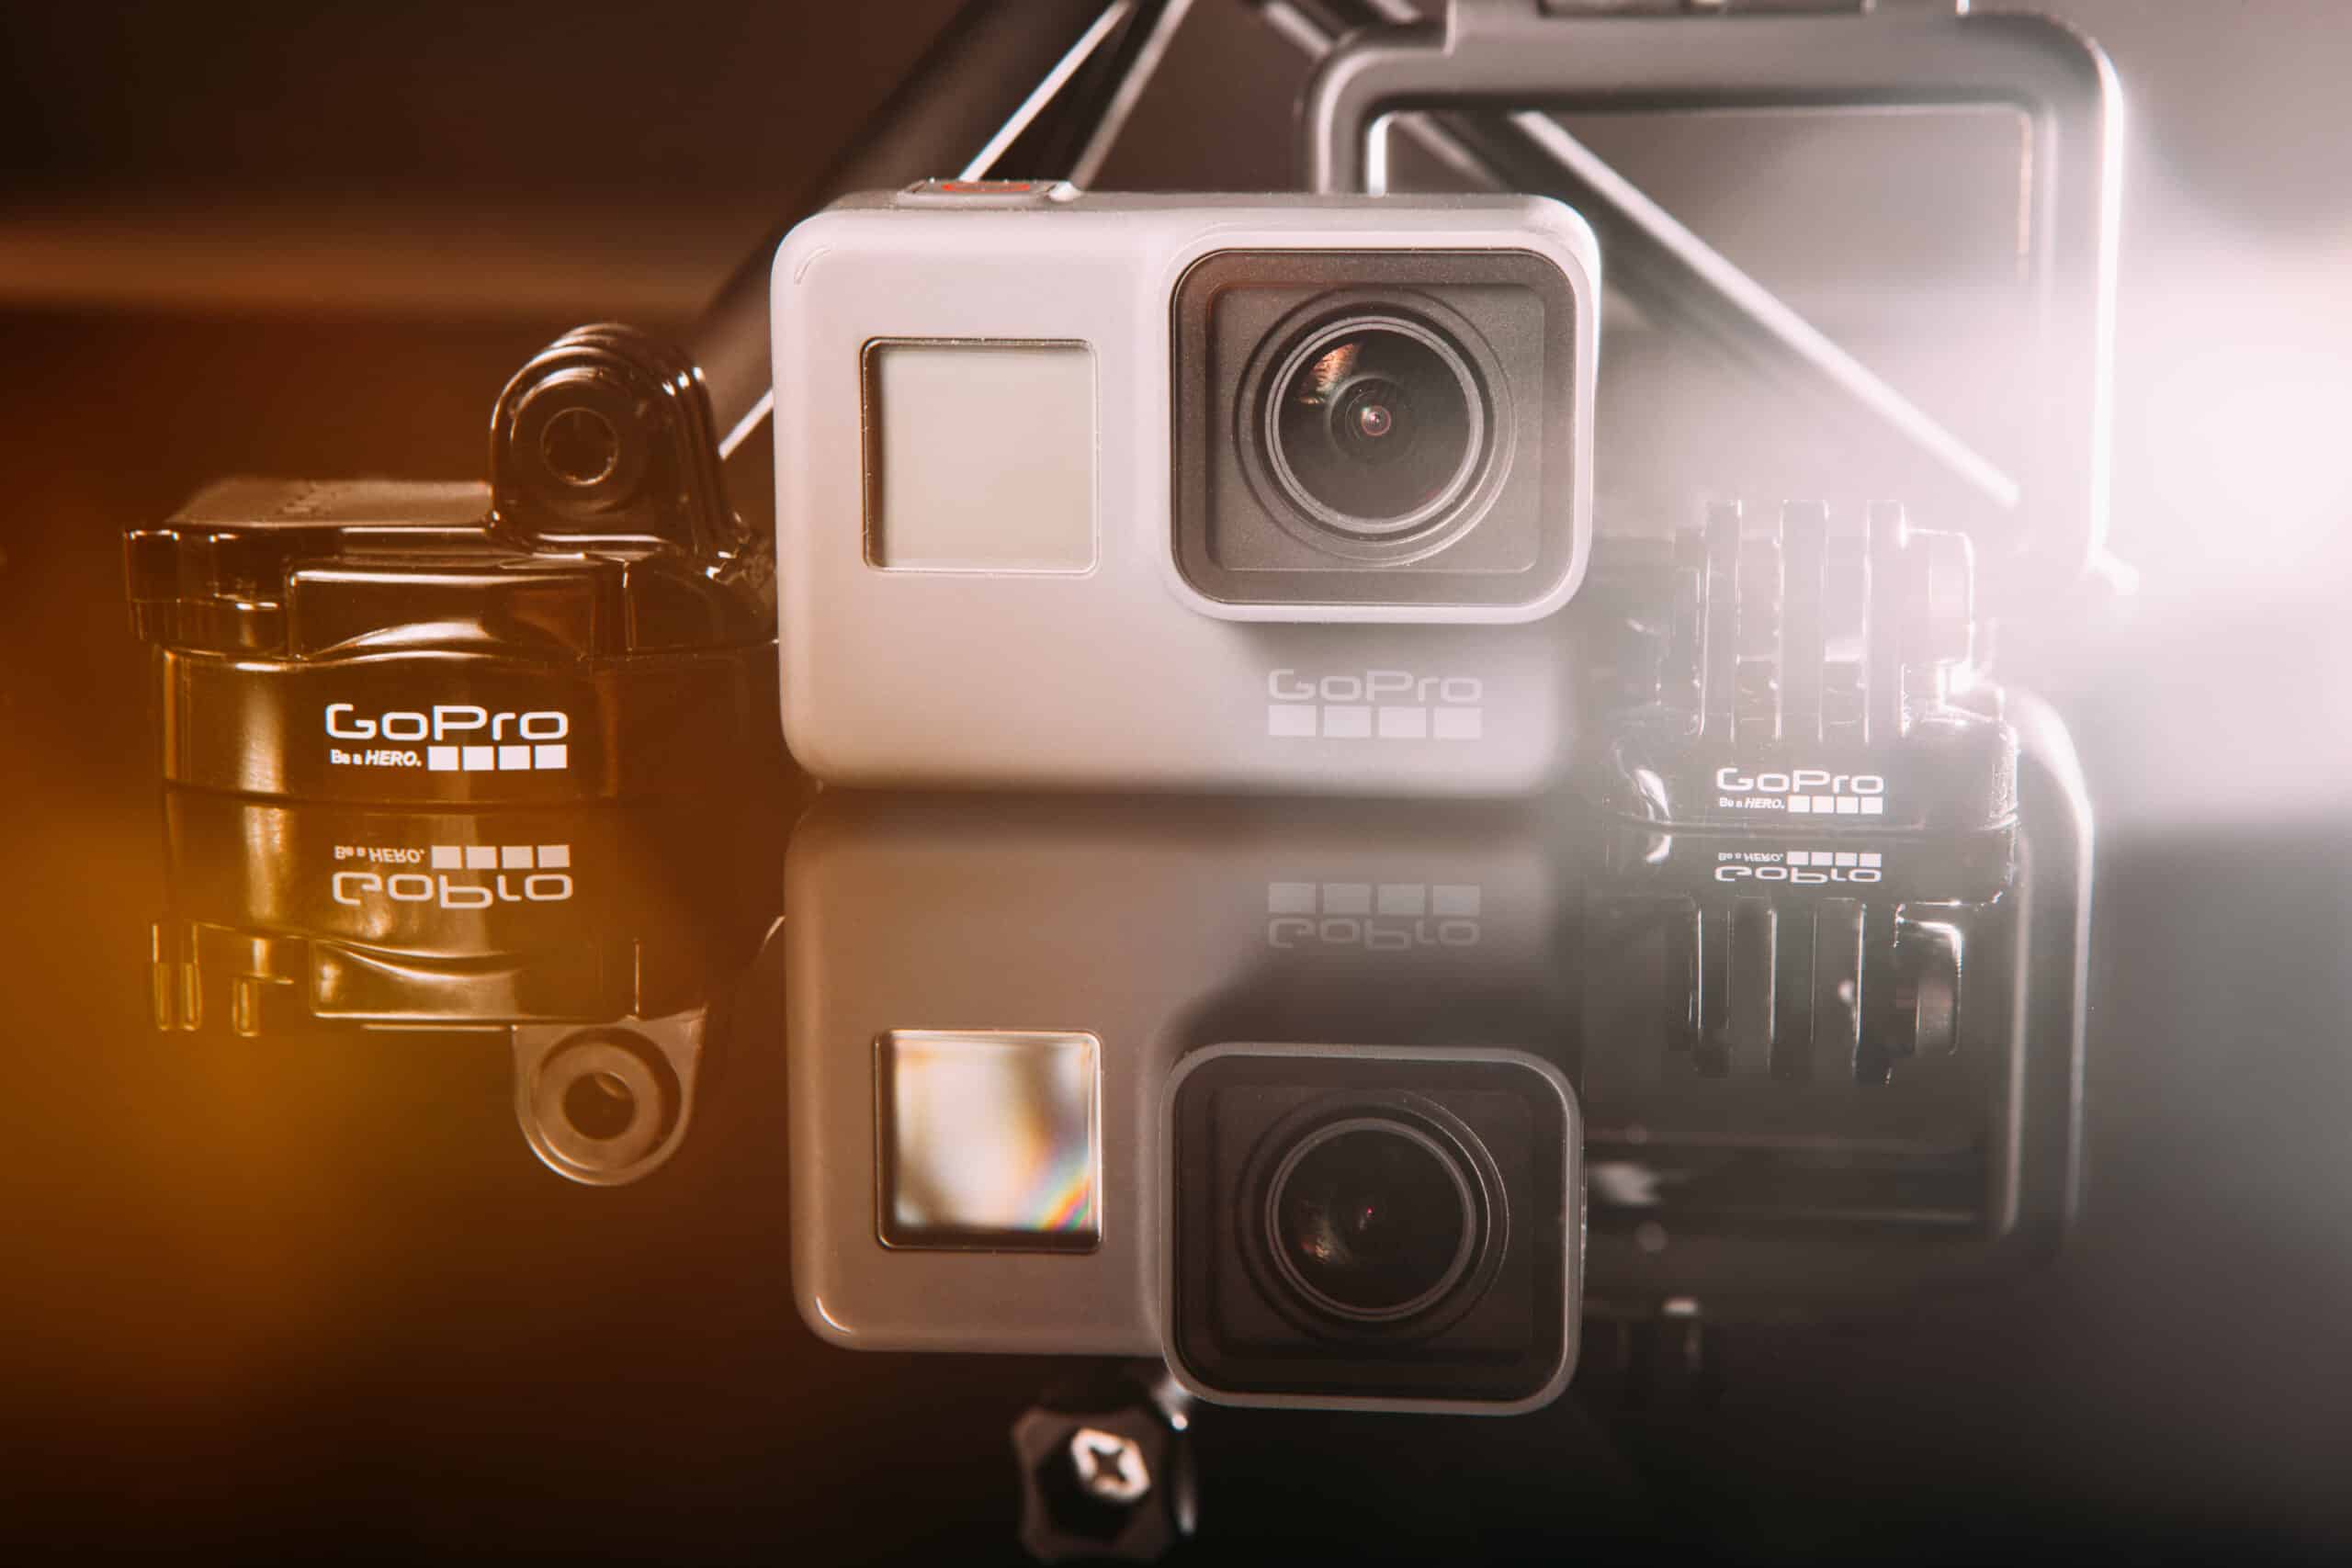 Best GoPro Cameras